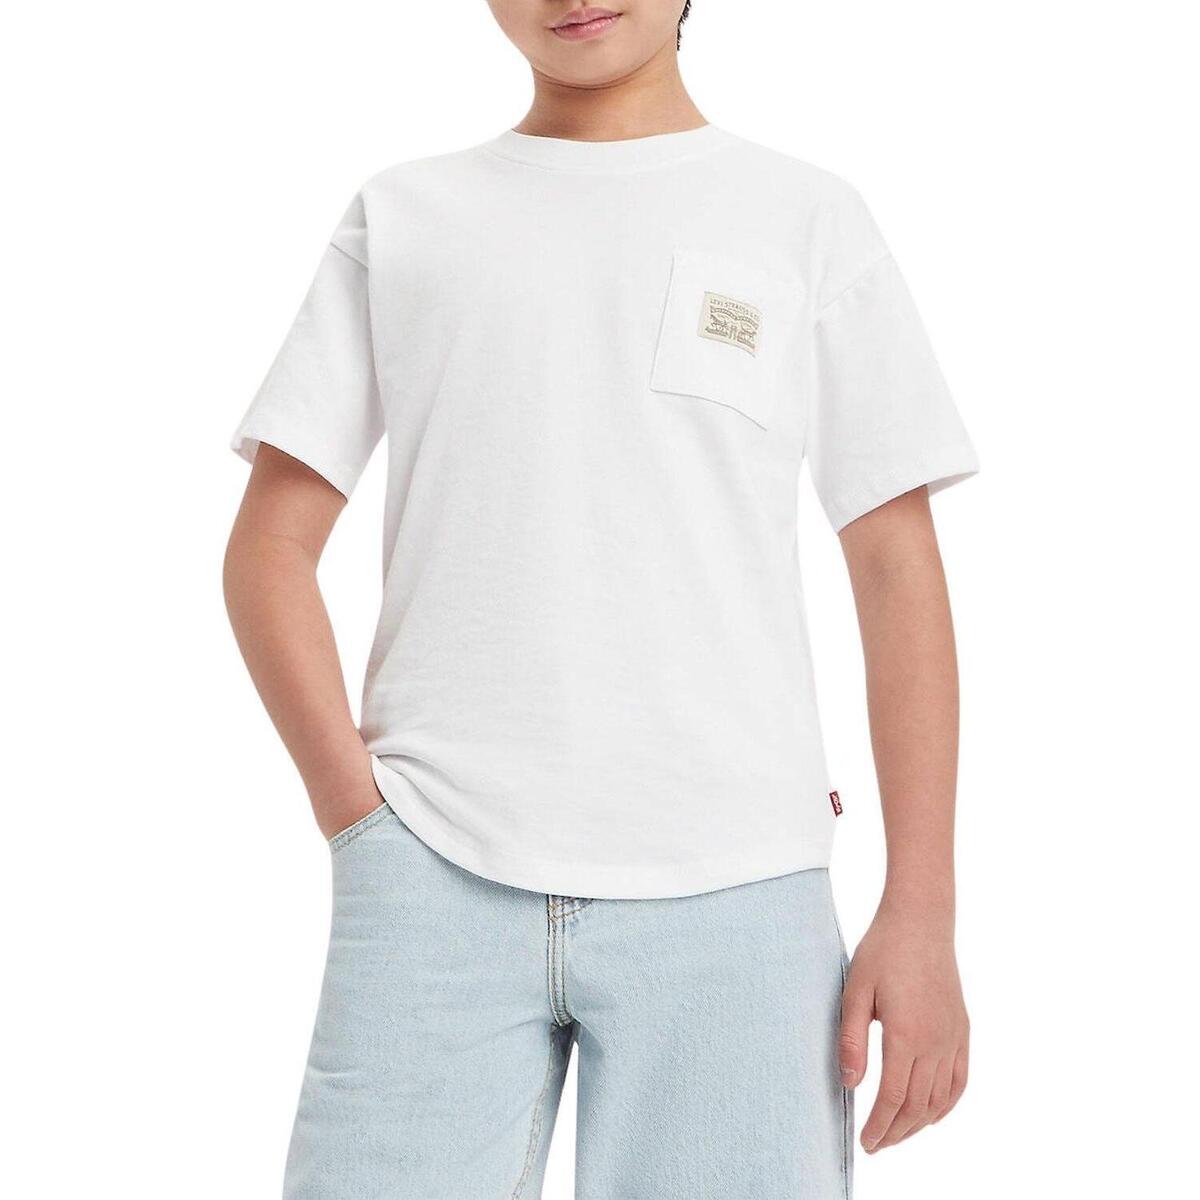 Textil Chlapecké Trička s krátkým rukávem Levi's  Bílá